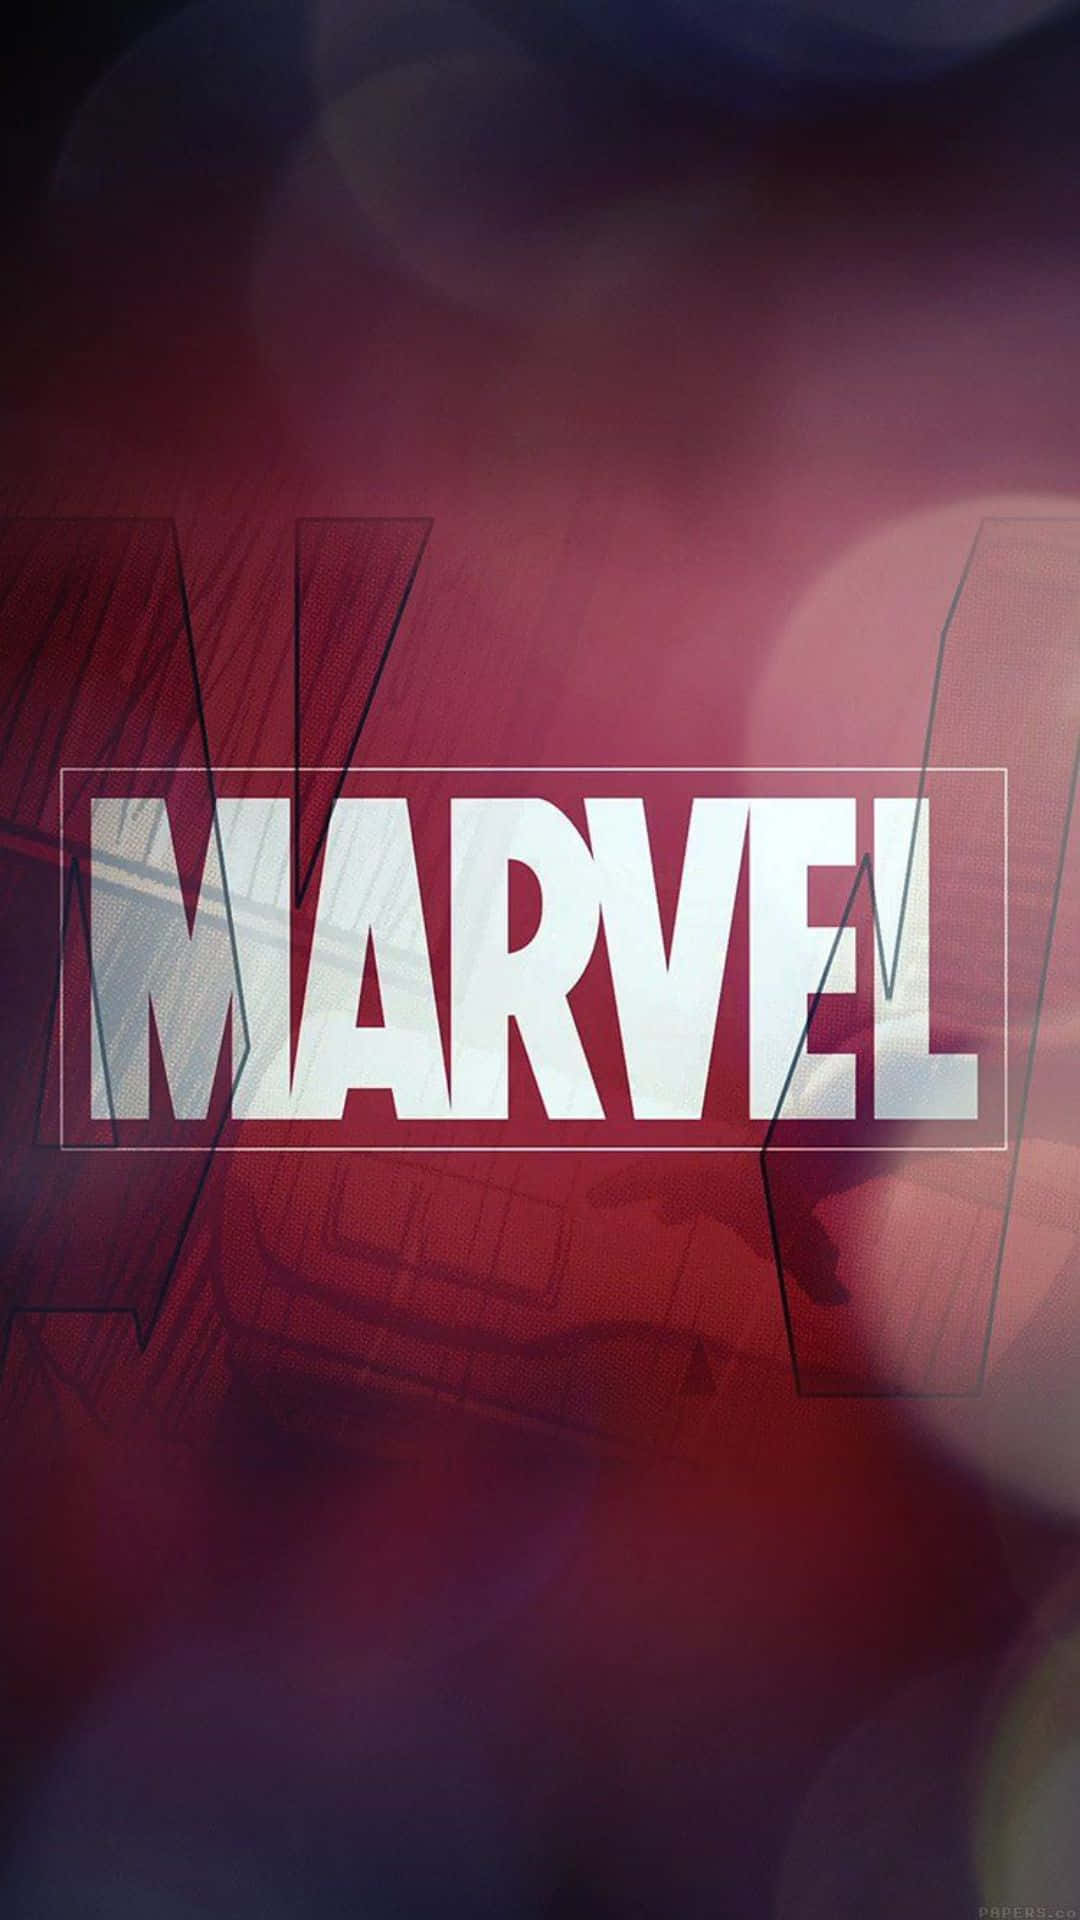 Androidmarvel's Avengers Marvel-affisch Röd Bakgrundsbild